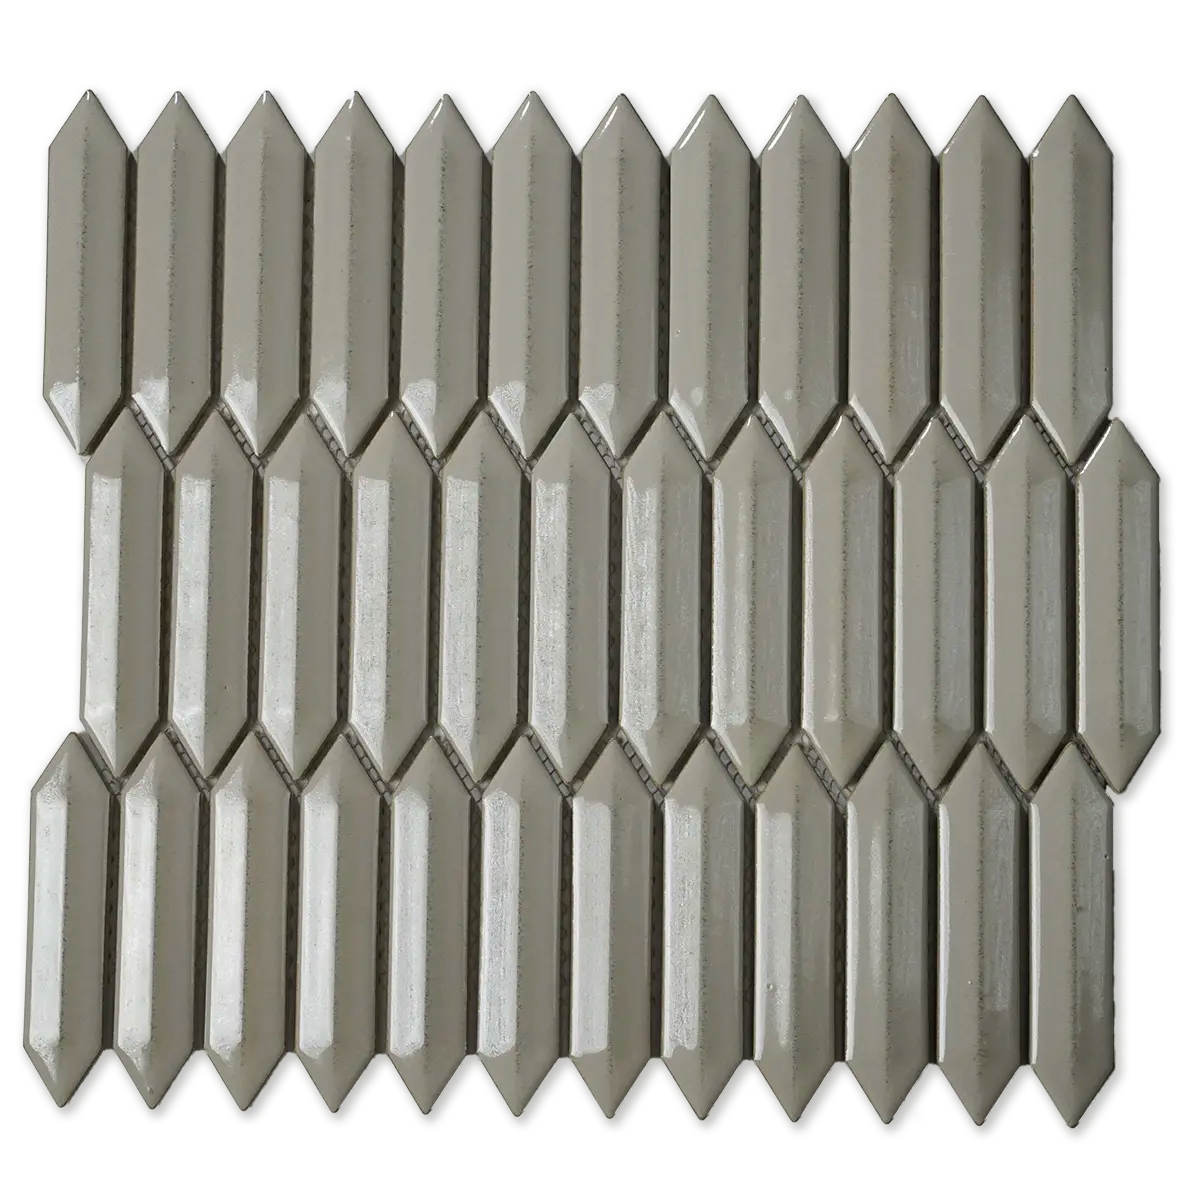 CC Mosaics + 1”x4” 3D Picket 12”x12” Porcelain Mosaic Backsplash Wall Tile Glazed Tender Grey